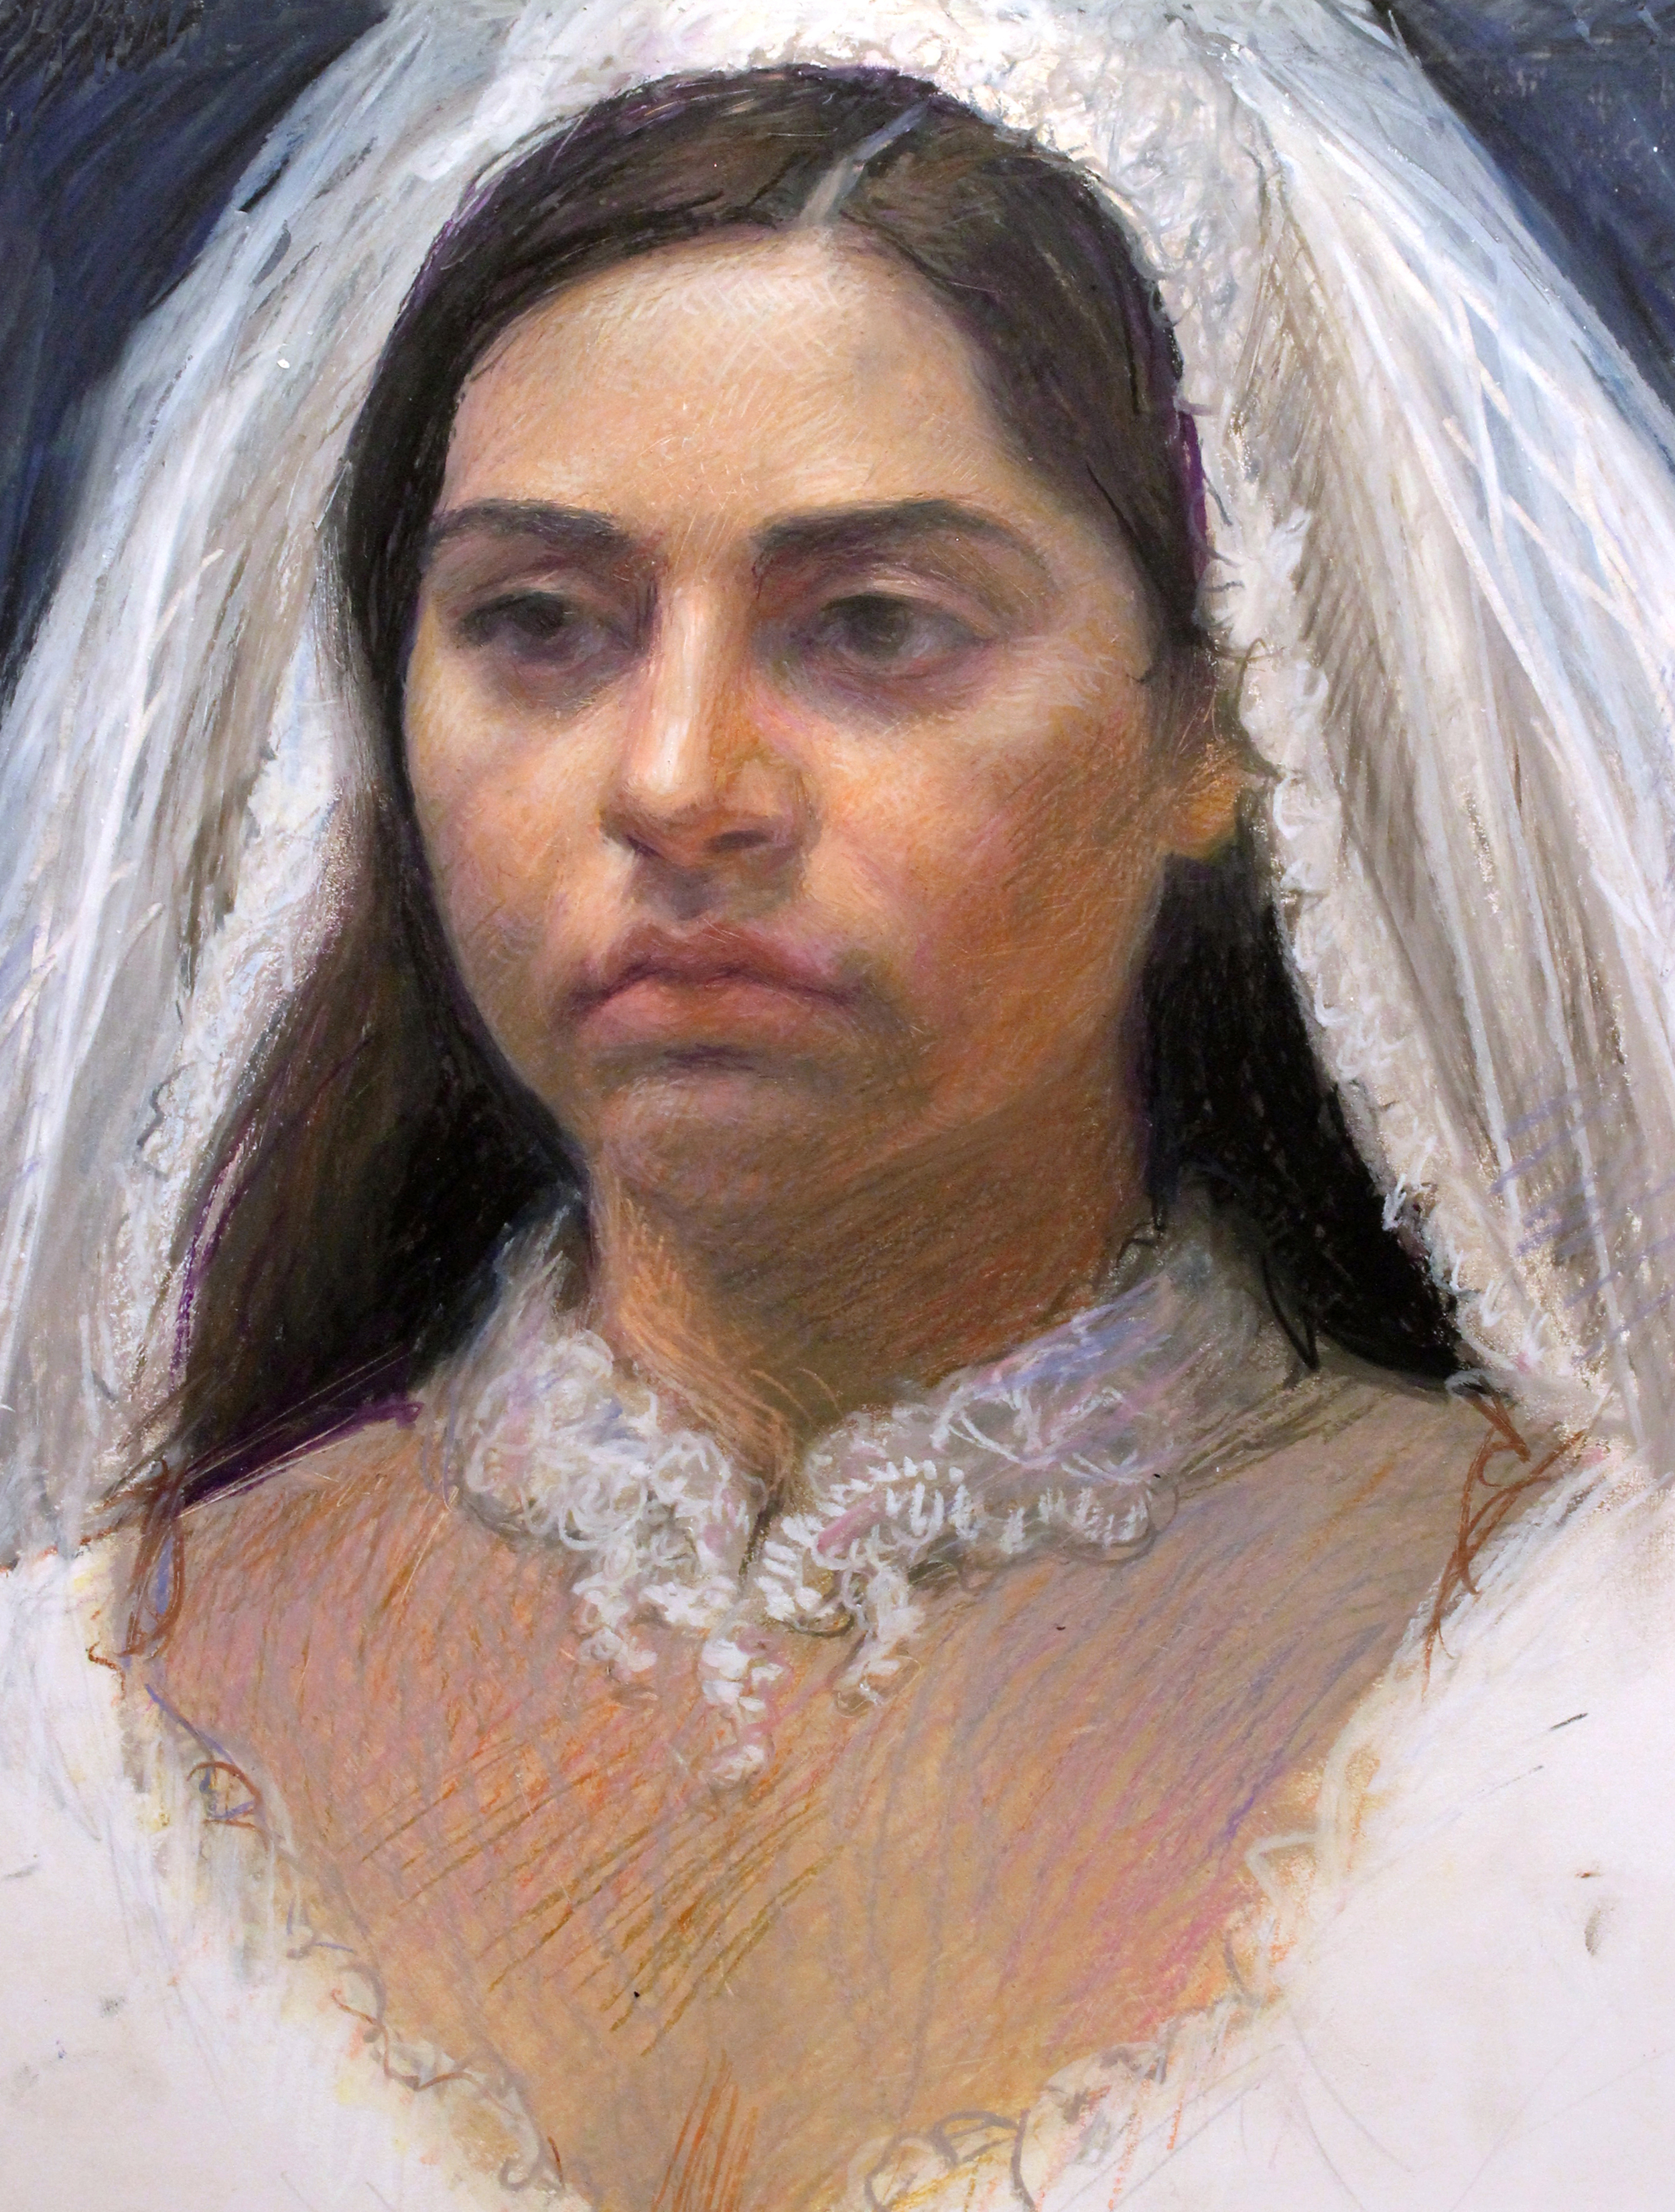 Miriam as Bride